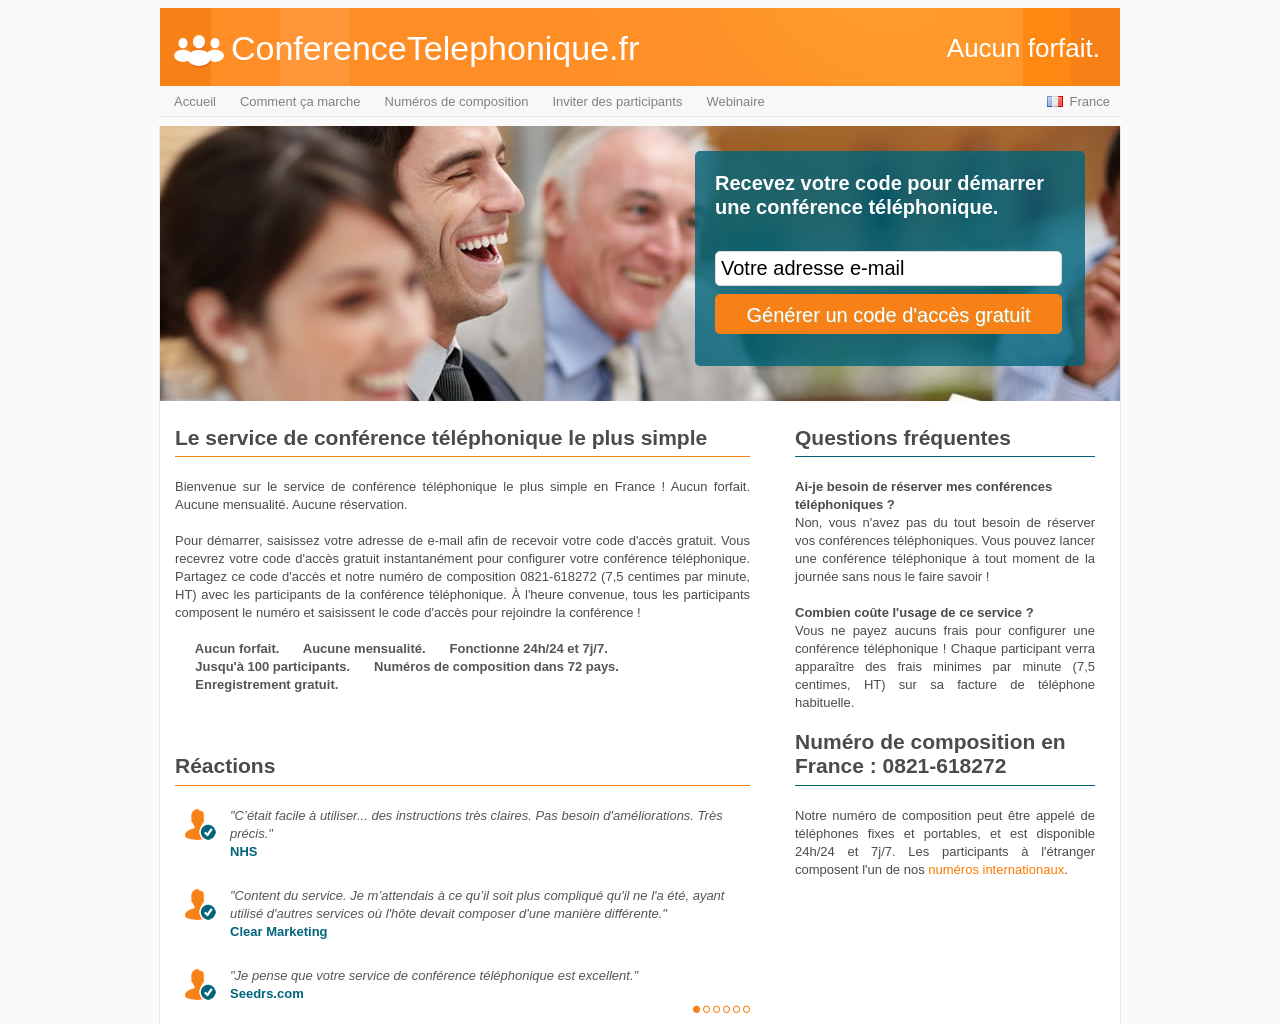 www.conferencetelephonique.fr